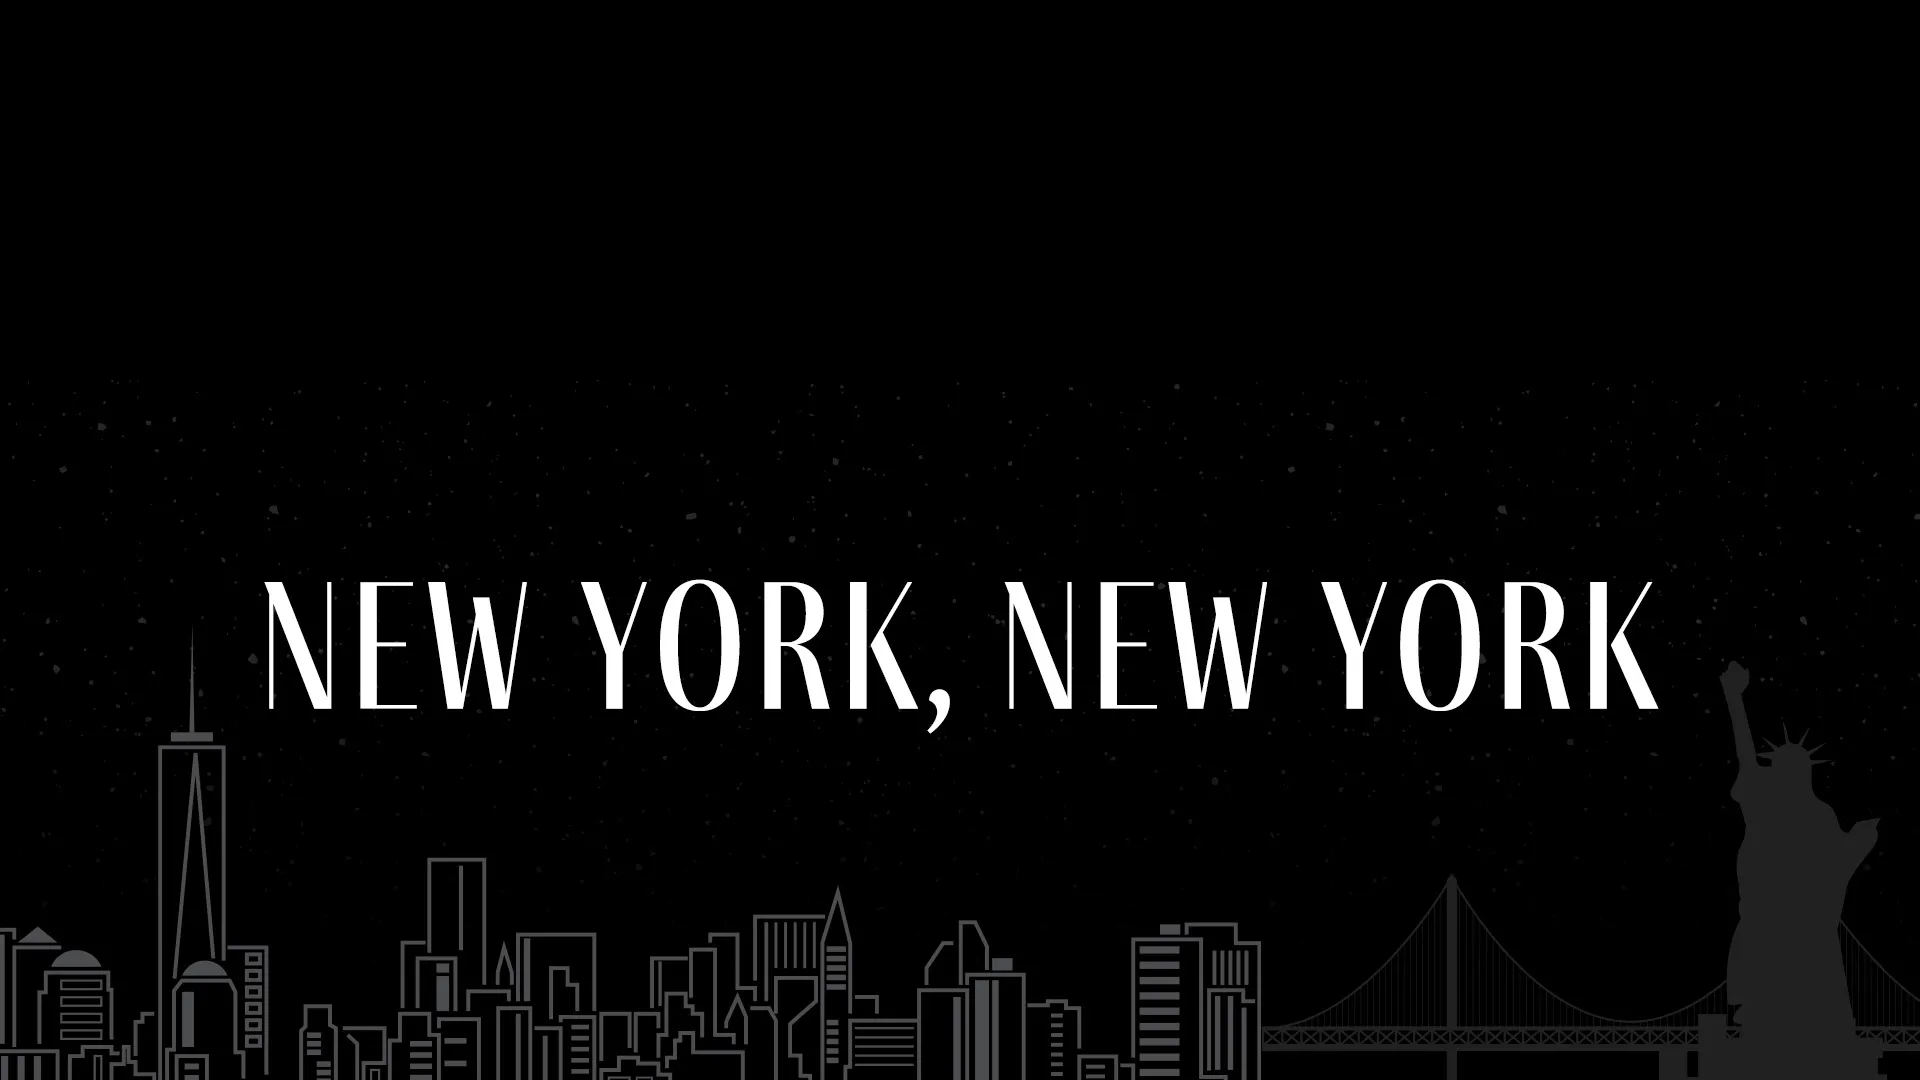 New York, New York gala graphic